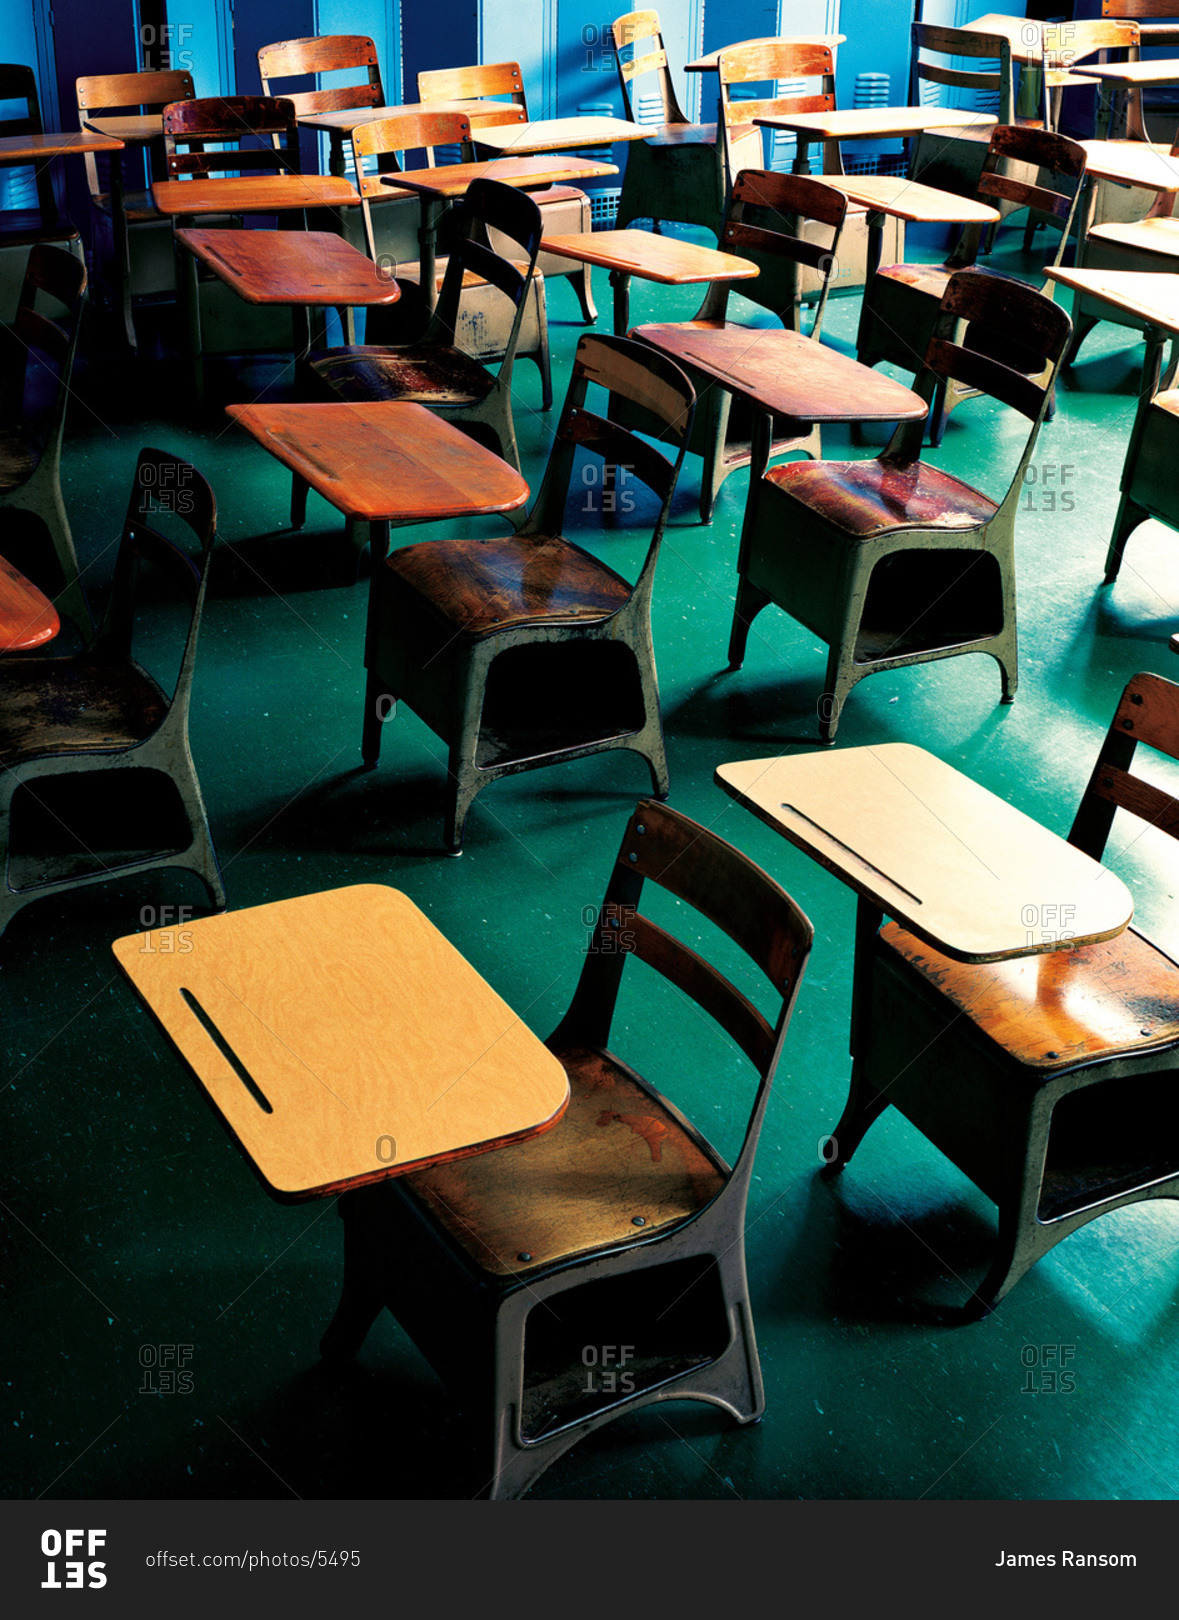 Retro school desks in a classroom